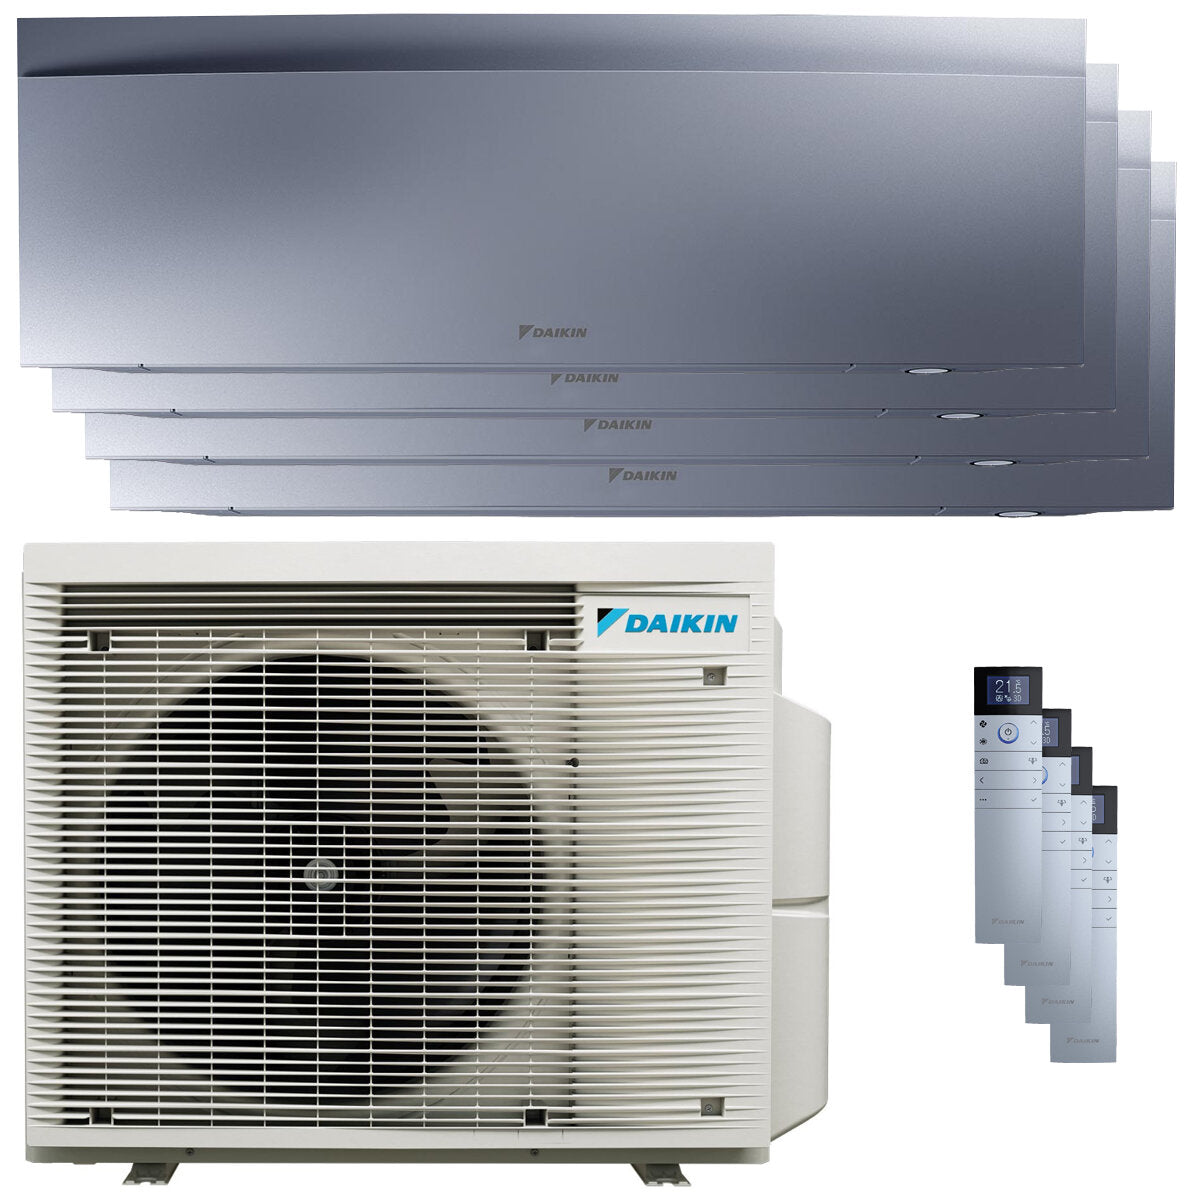 Daikin Emura air conditioner 3 split panels 7000 + 9000 + 9000 + 12000 BTU inverter A + wifi outdoor unit 6.8 kW Silver